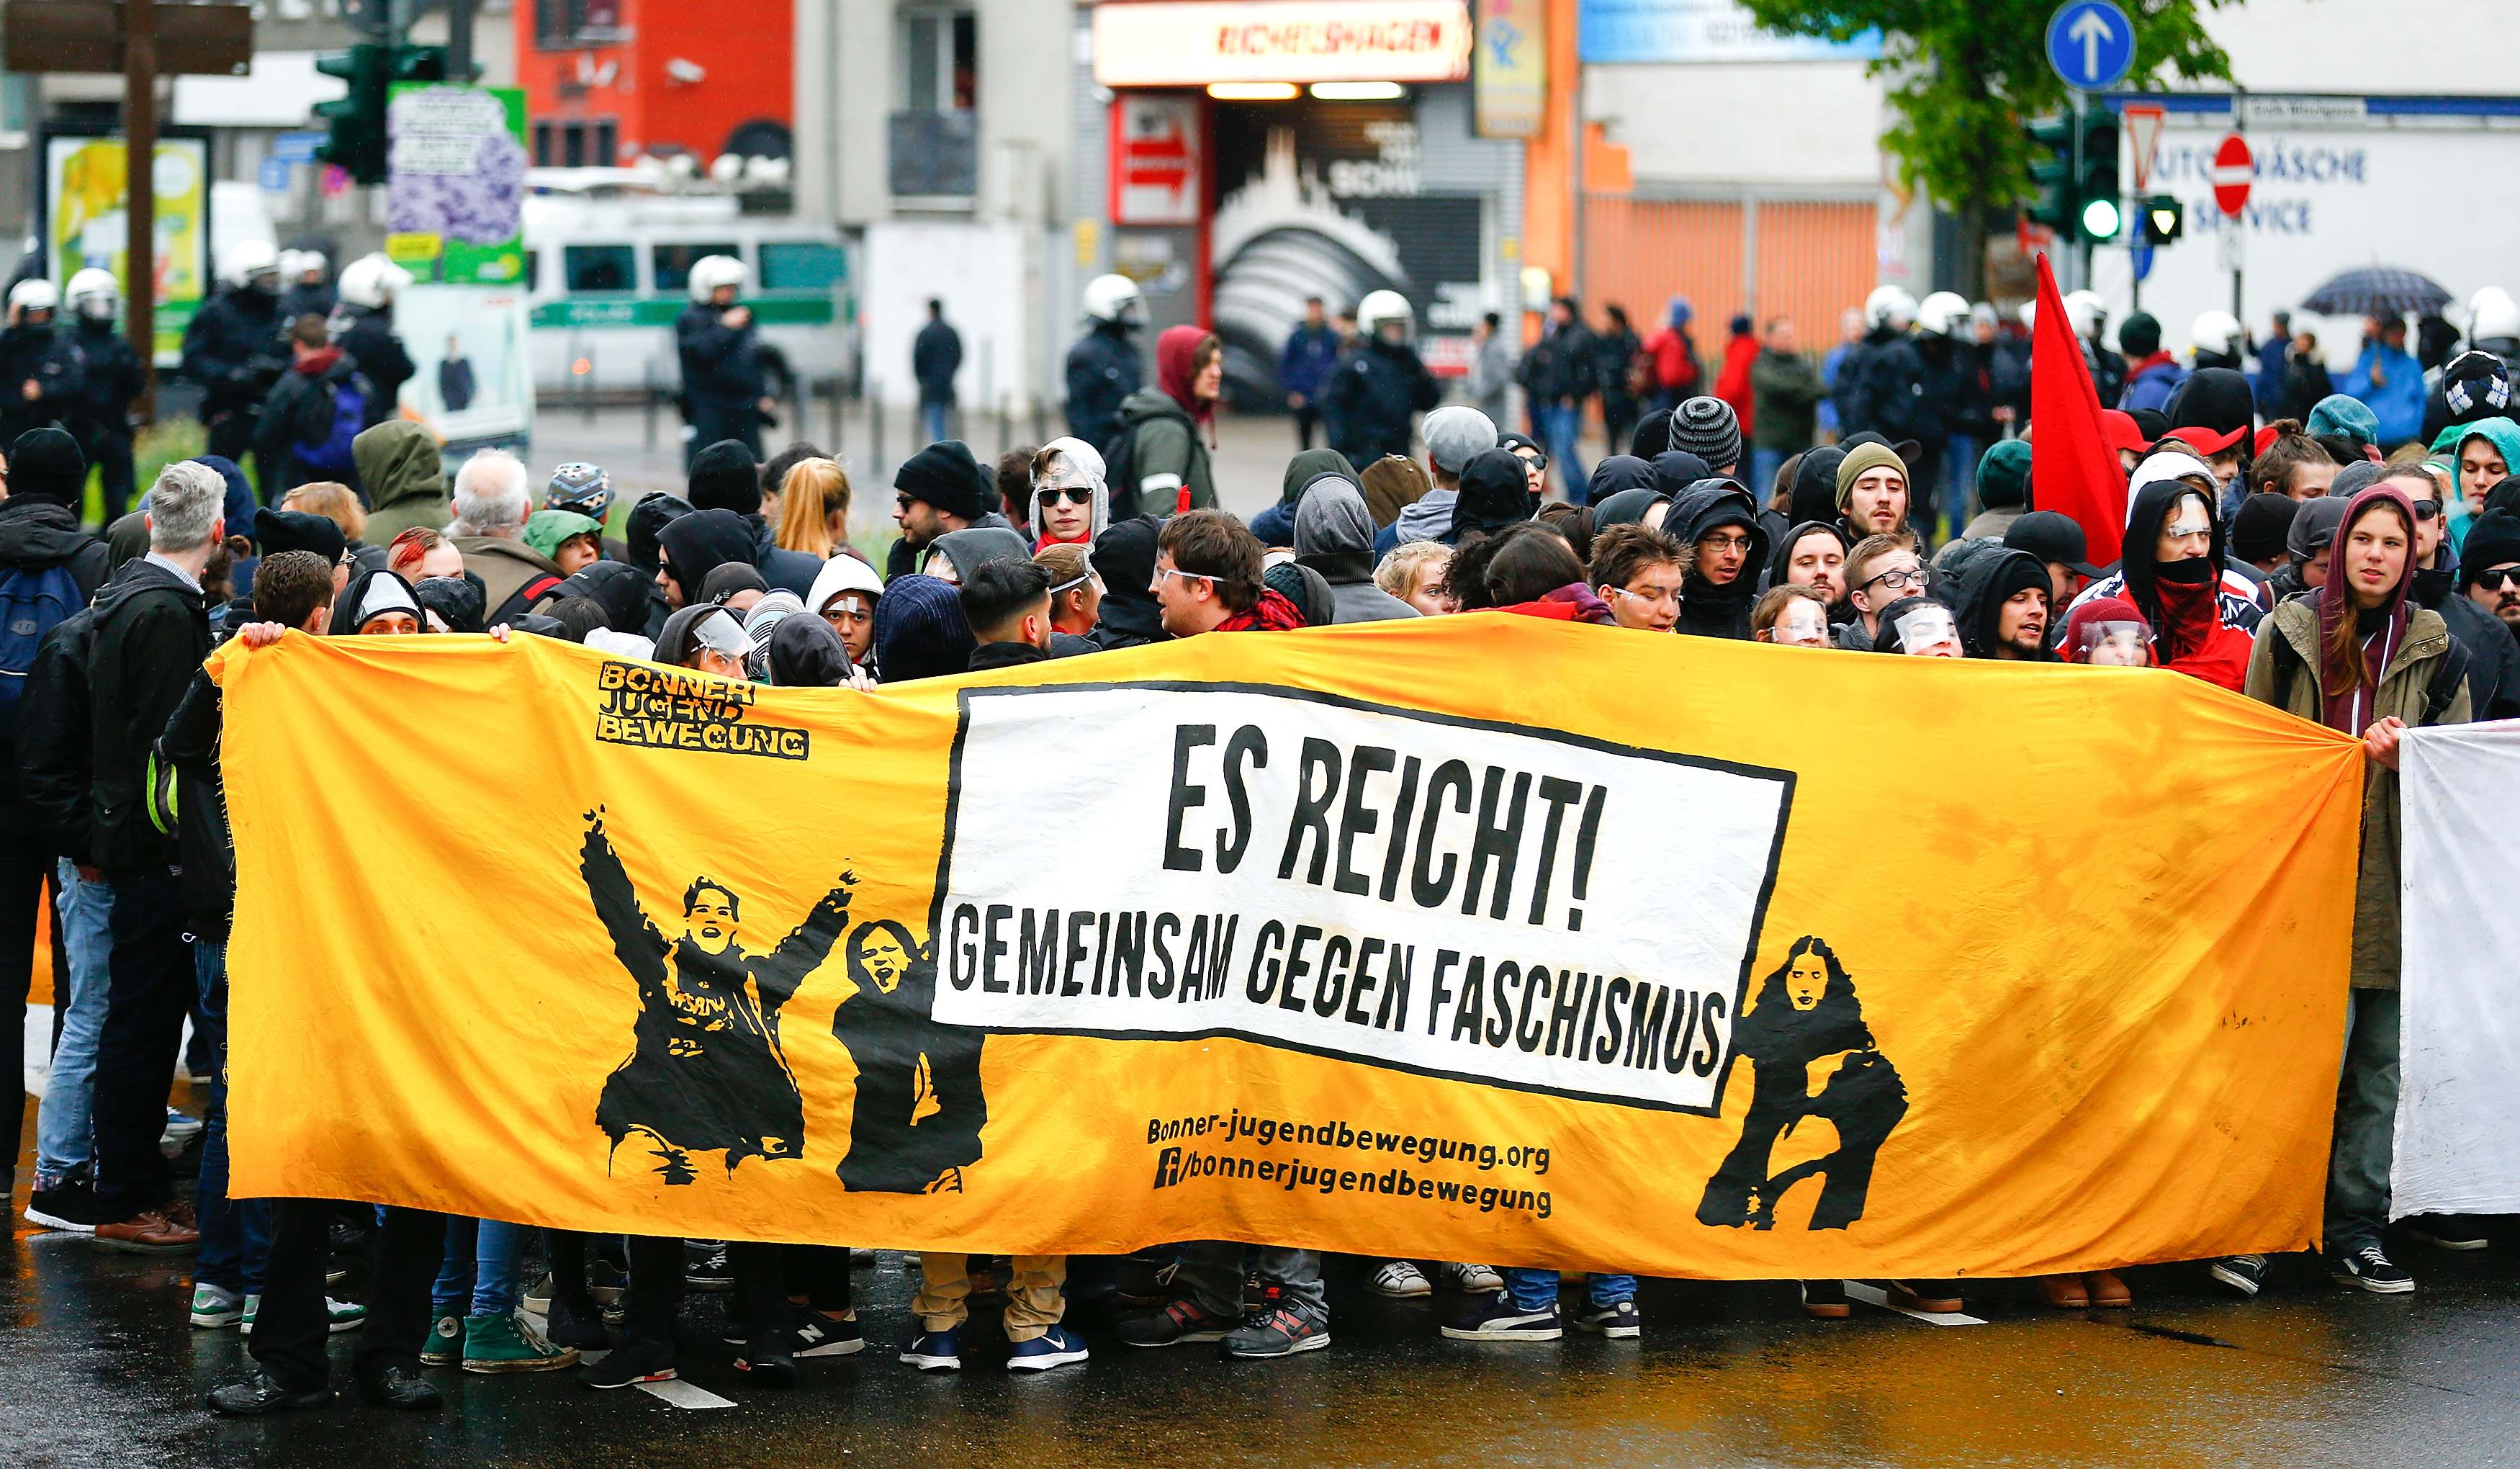 متظاهرون يحتشدون ضد حزب البديل الألمانى المعارض للهجرة